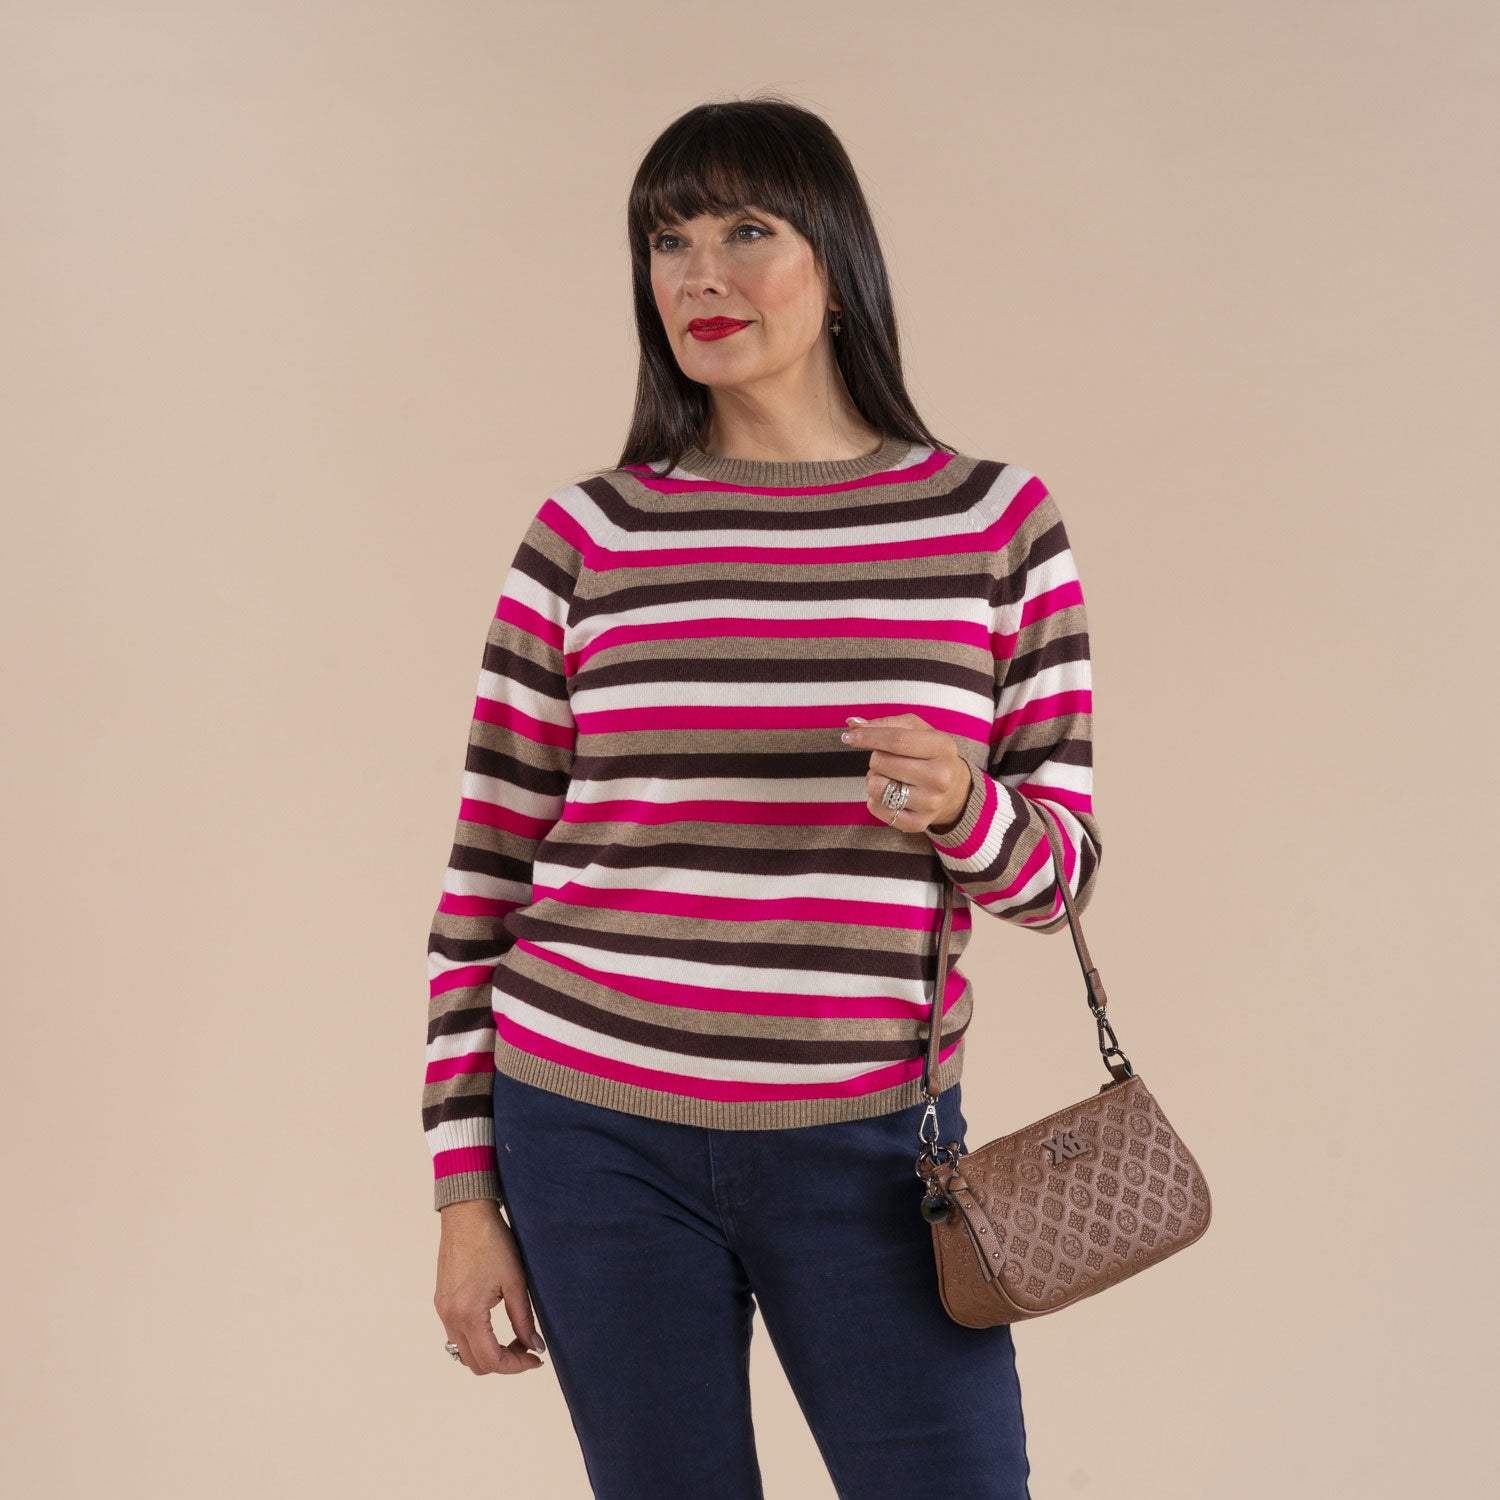 Tea Lane Stripe Raglan Sweater - Red / Taupe 1 Shaws Department Stores